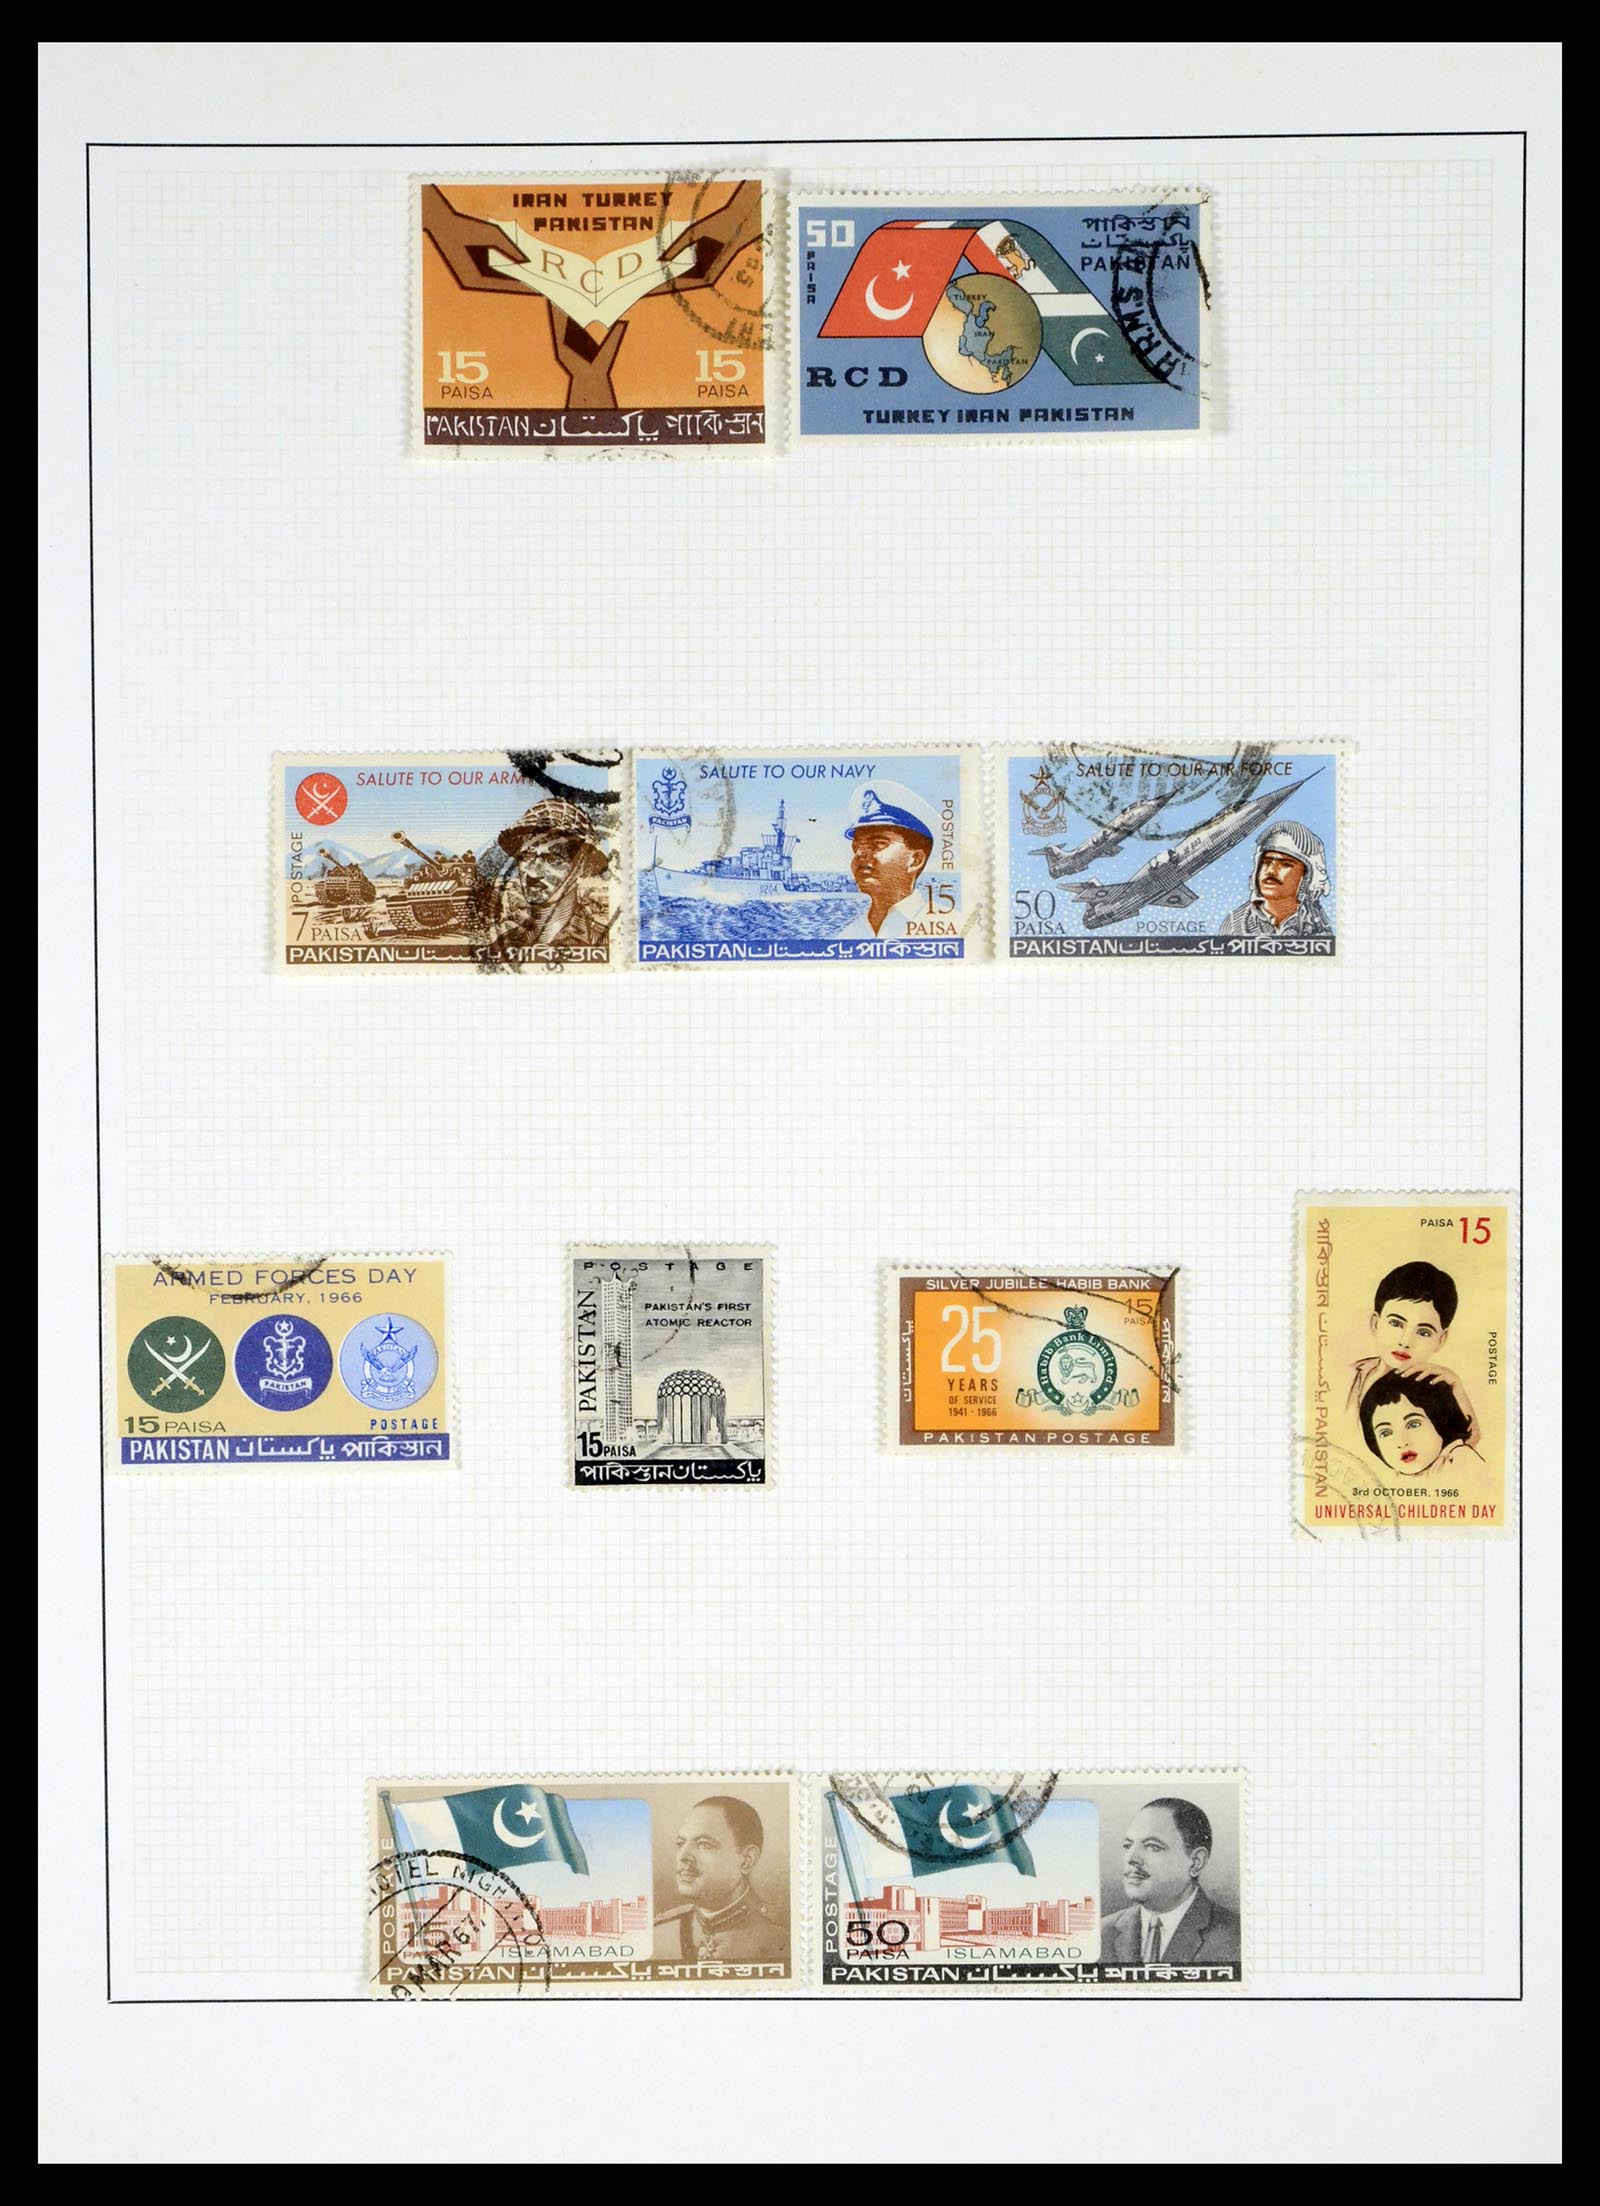 37619 023 - Stamp collection 37619 Pakistan/Bangladesh 1947-2000.